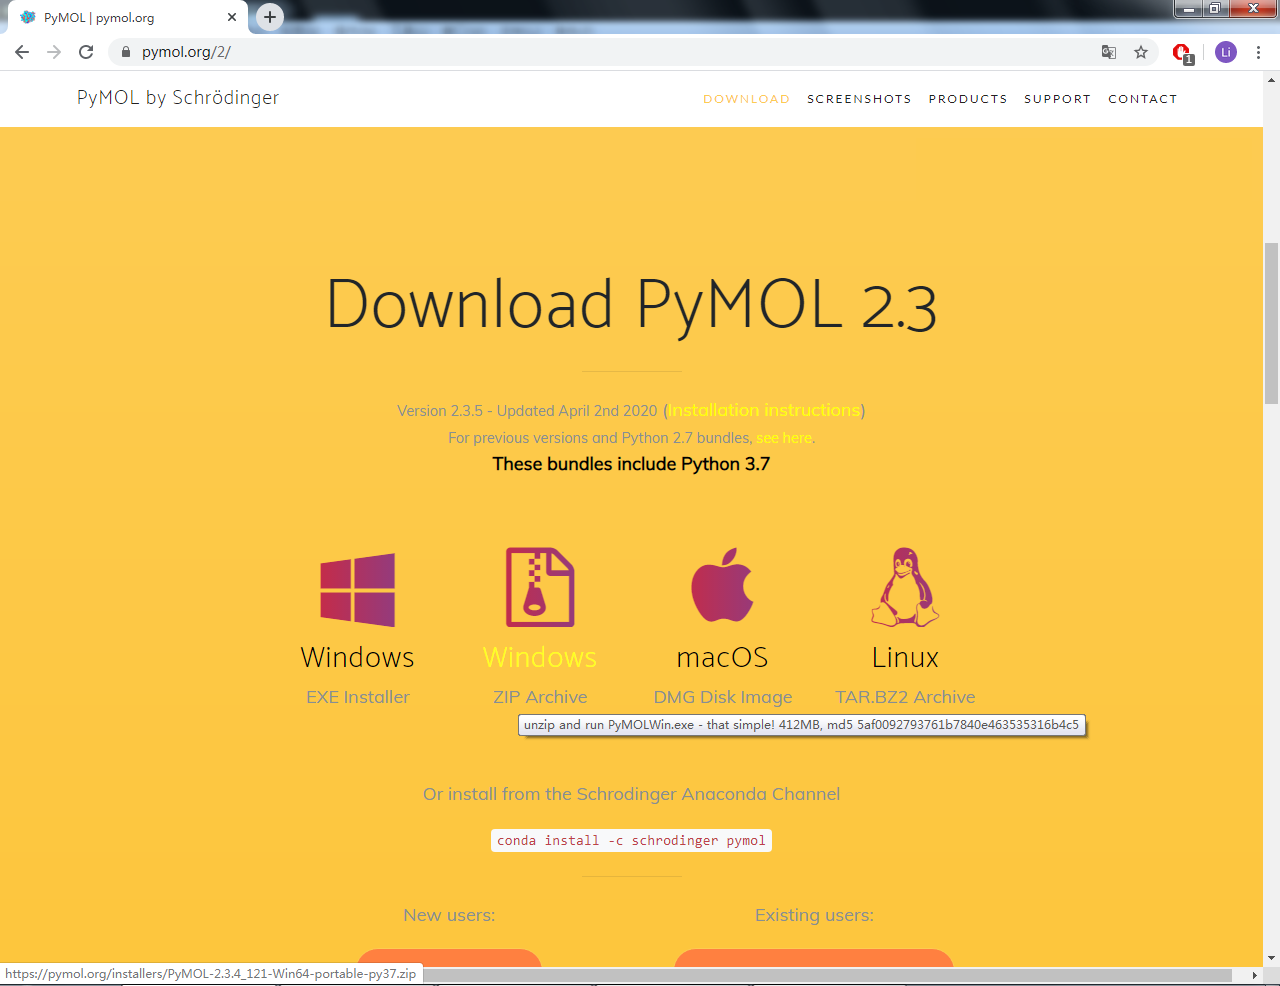 到<a href="https://pymol.org/2/">pymol官方网站</a>直接下载免安装版(第二个), 目前为<code>PyMOL-2.3.4_121-Win64-portable-py37.zip</code>.